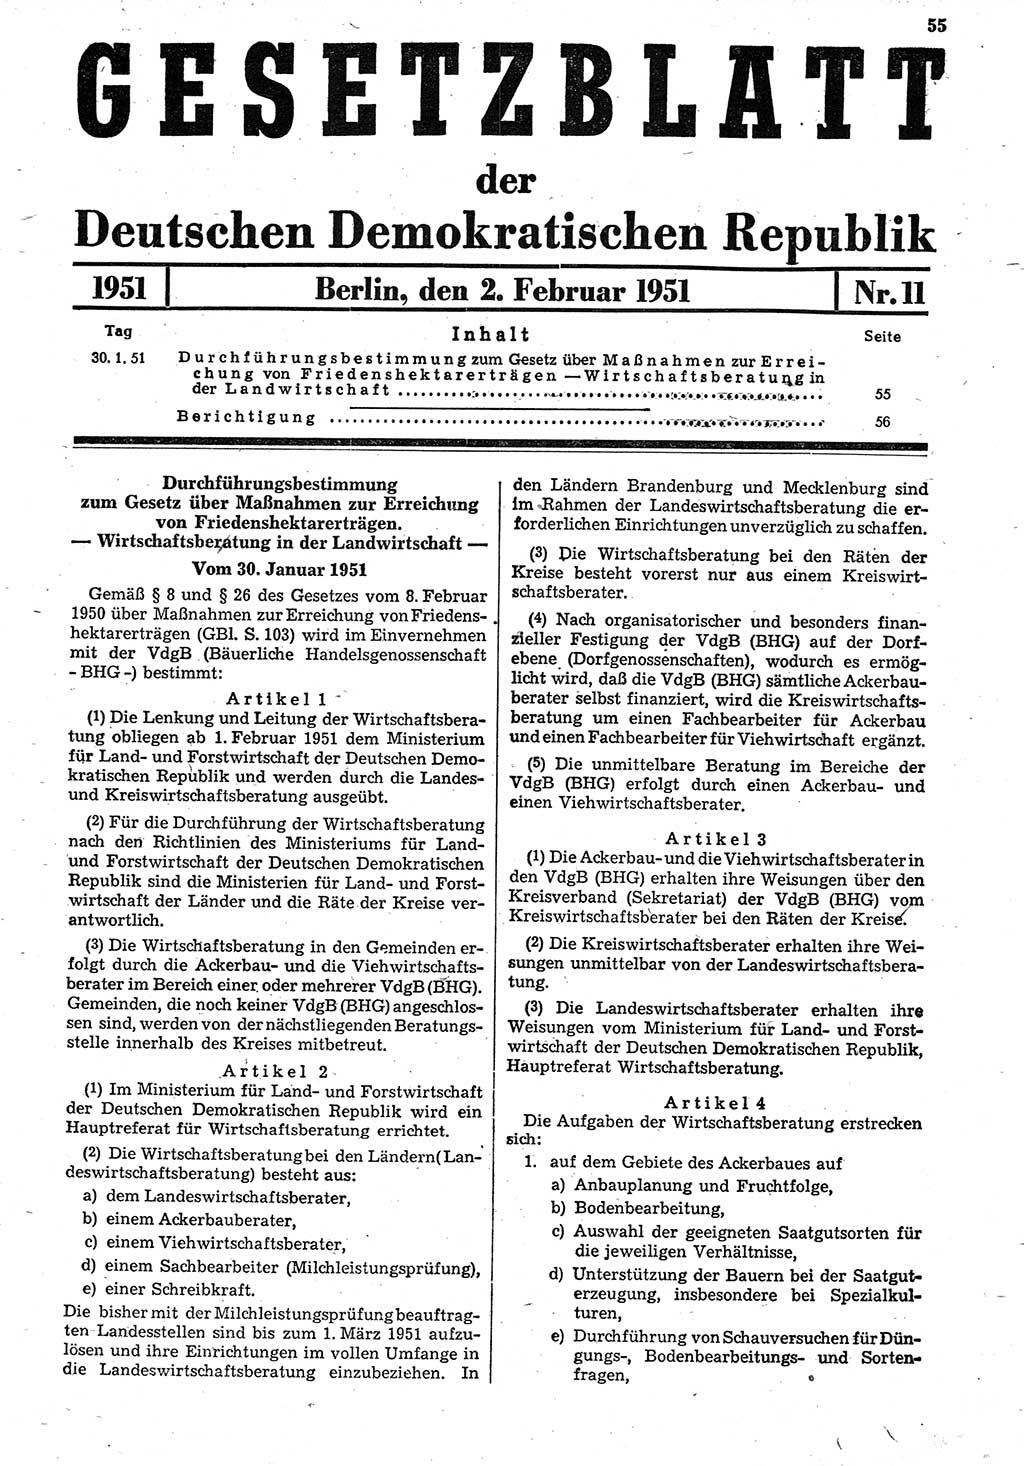 Gesetzblatt (GBl.) der Deutschen Demokratischen Republik (DDR) 1951, Seite 55 (GBl. DDR 1951, S. 55)